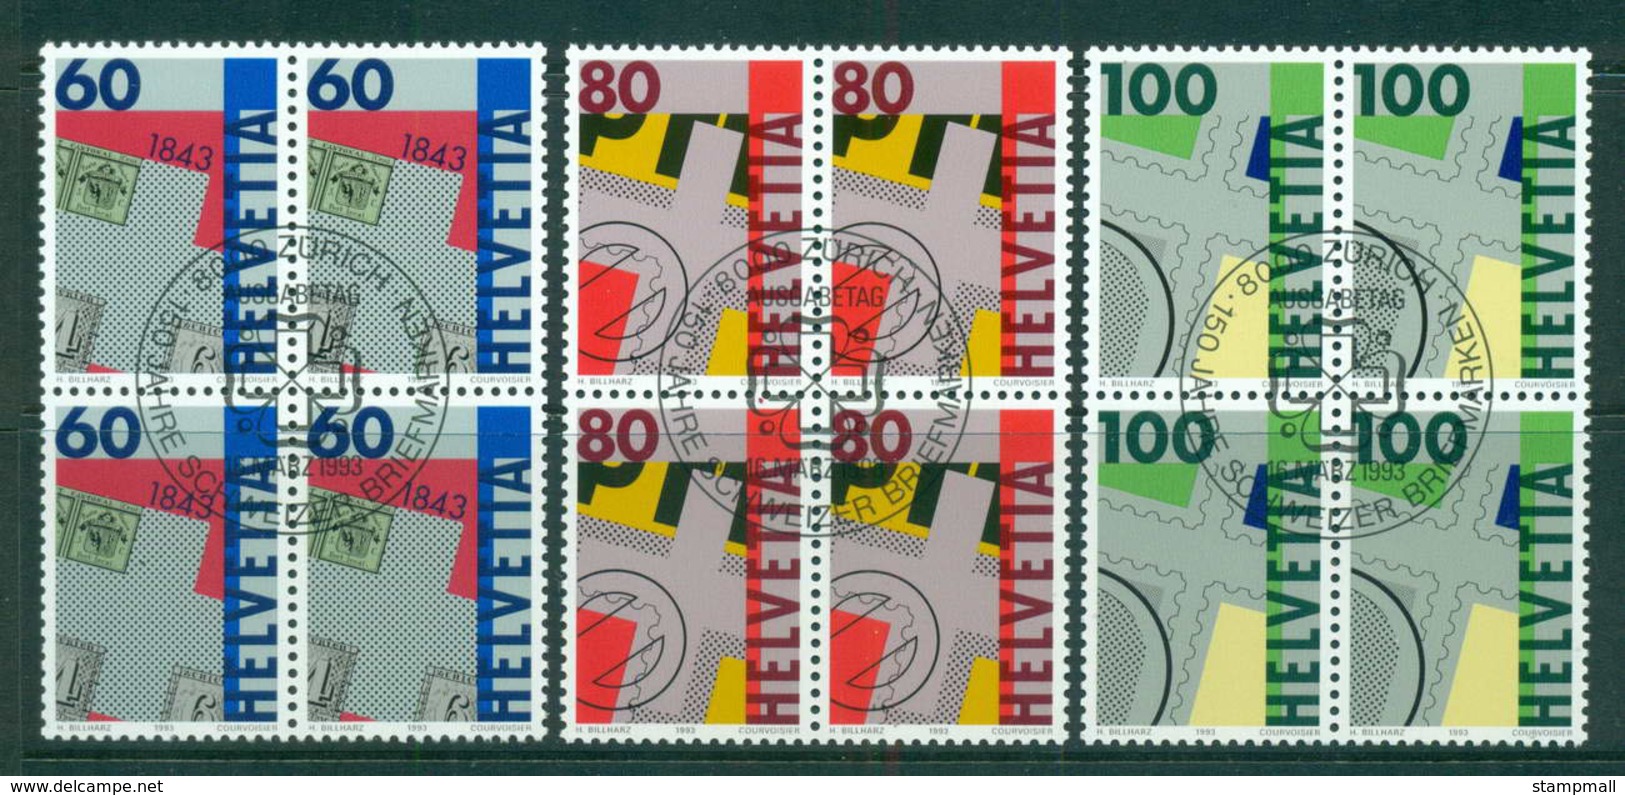 Switzerland 1993 Stamp Anniv. Blk 4 CTO Lot59023 - Unused Stamps